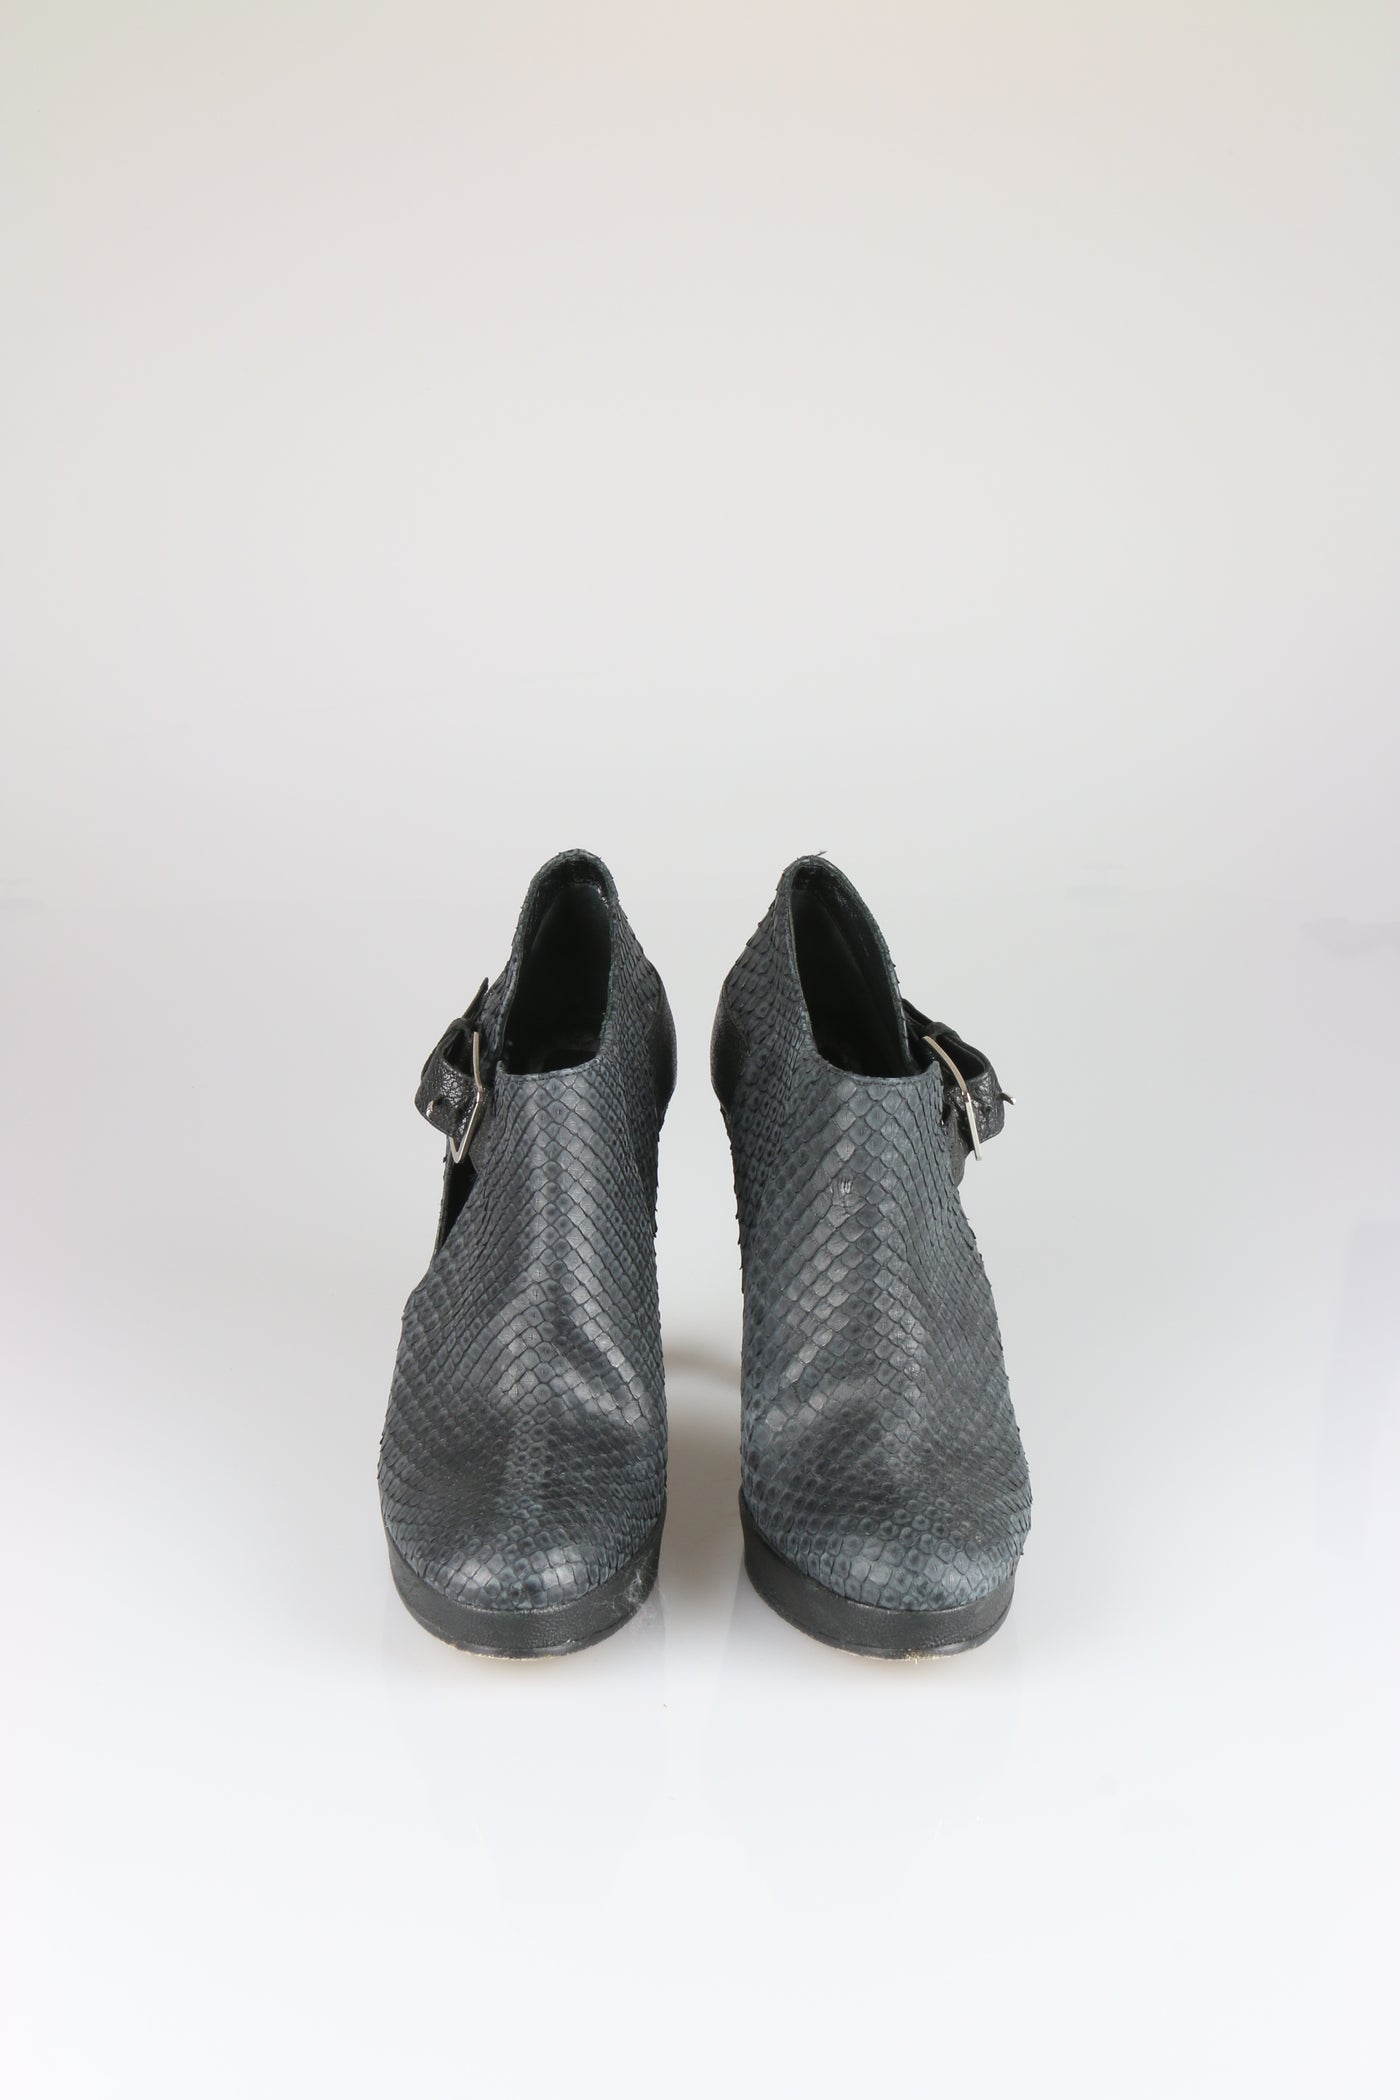 Cut-away grey shoe boots